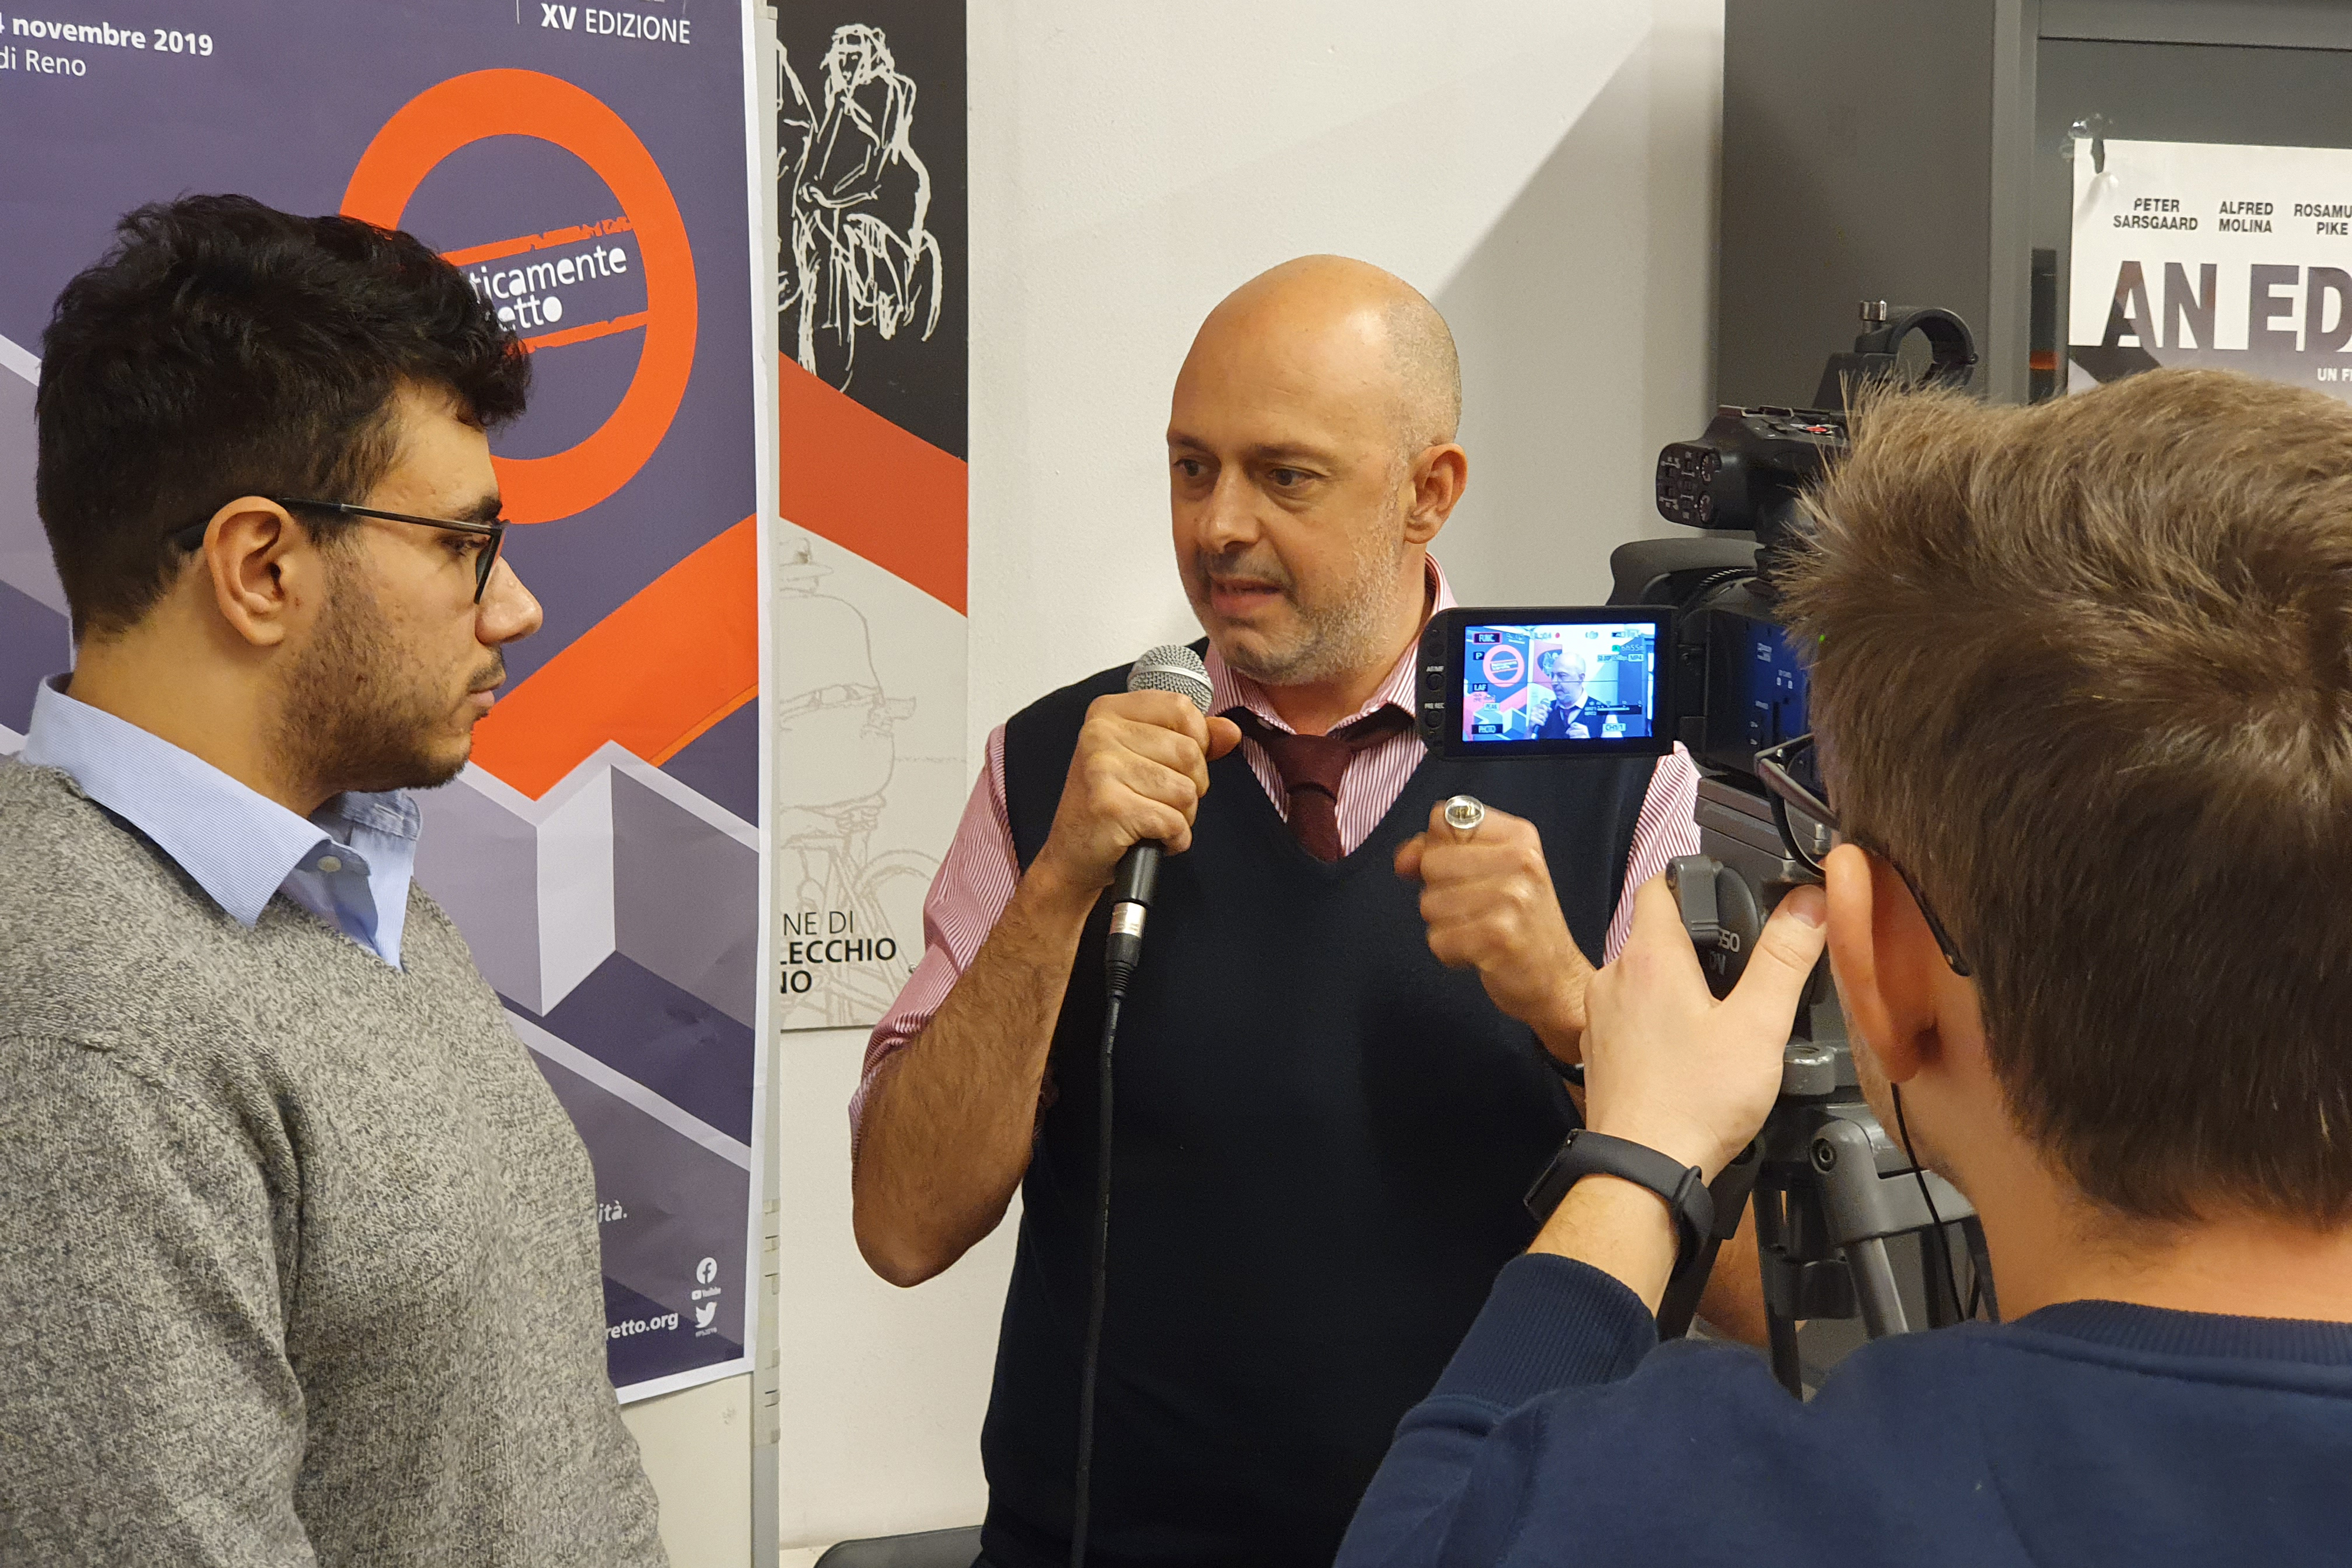 23 novembre - Antonio Talia intervistato dai Giovani Reporter a margine dellìincontro sulla Calabria